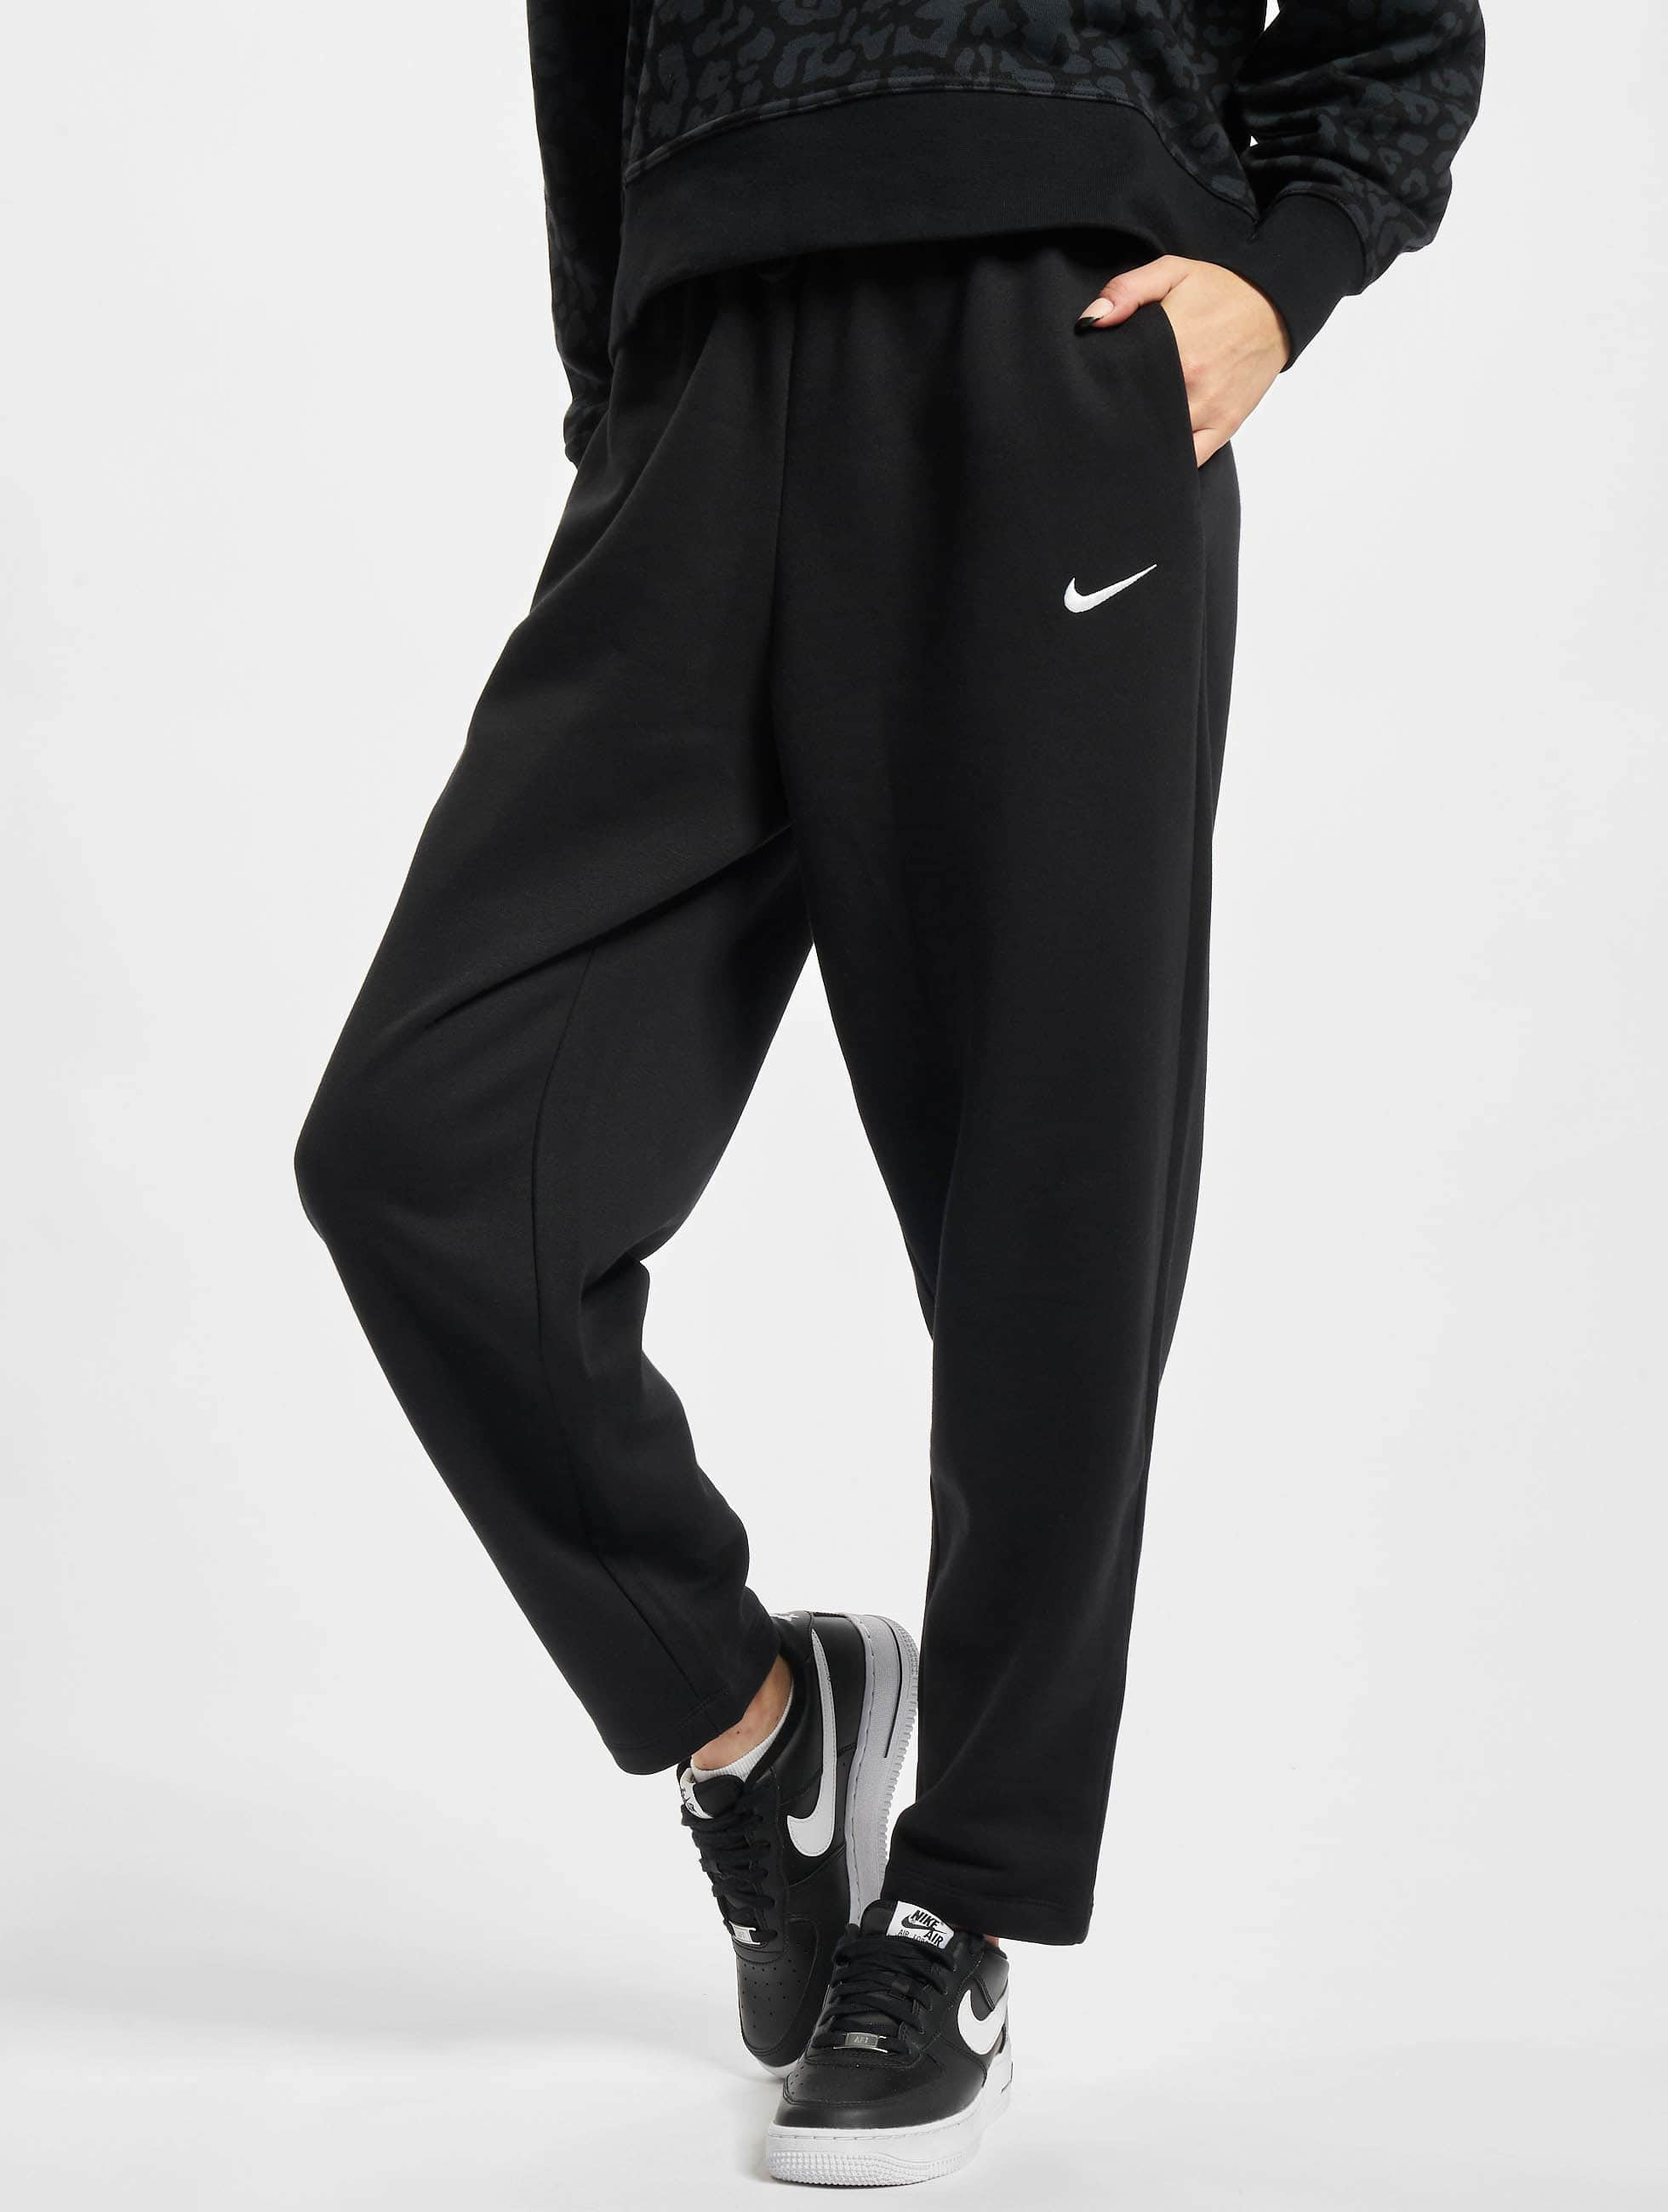 Mal funcionamiento intermitente Definición Nike Pantalón / Pantalón deportivo Essntl en negro 848664